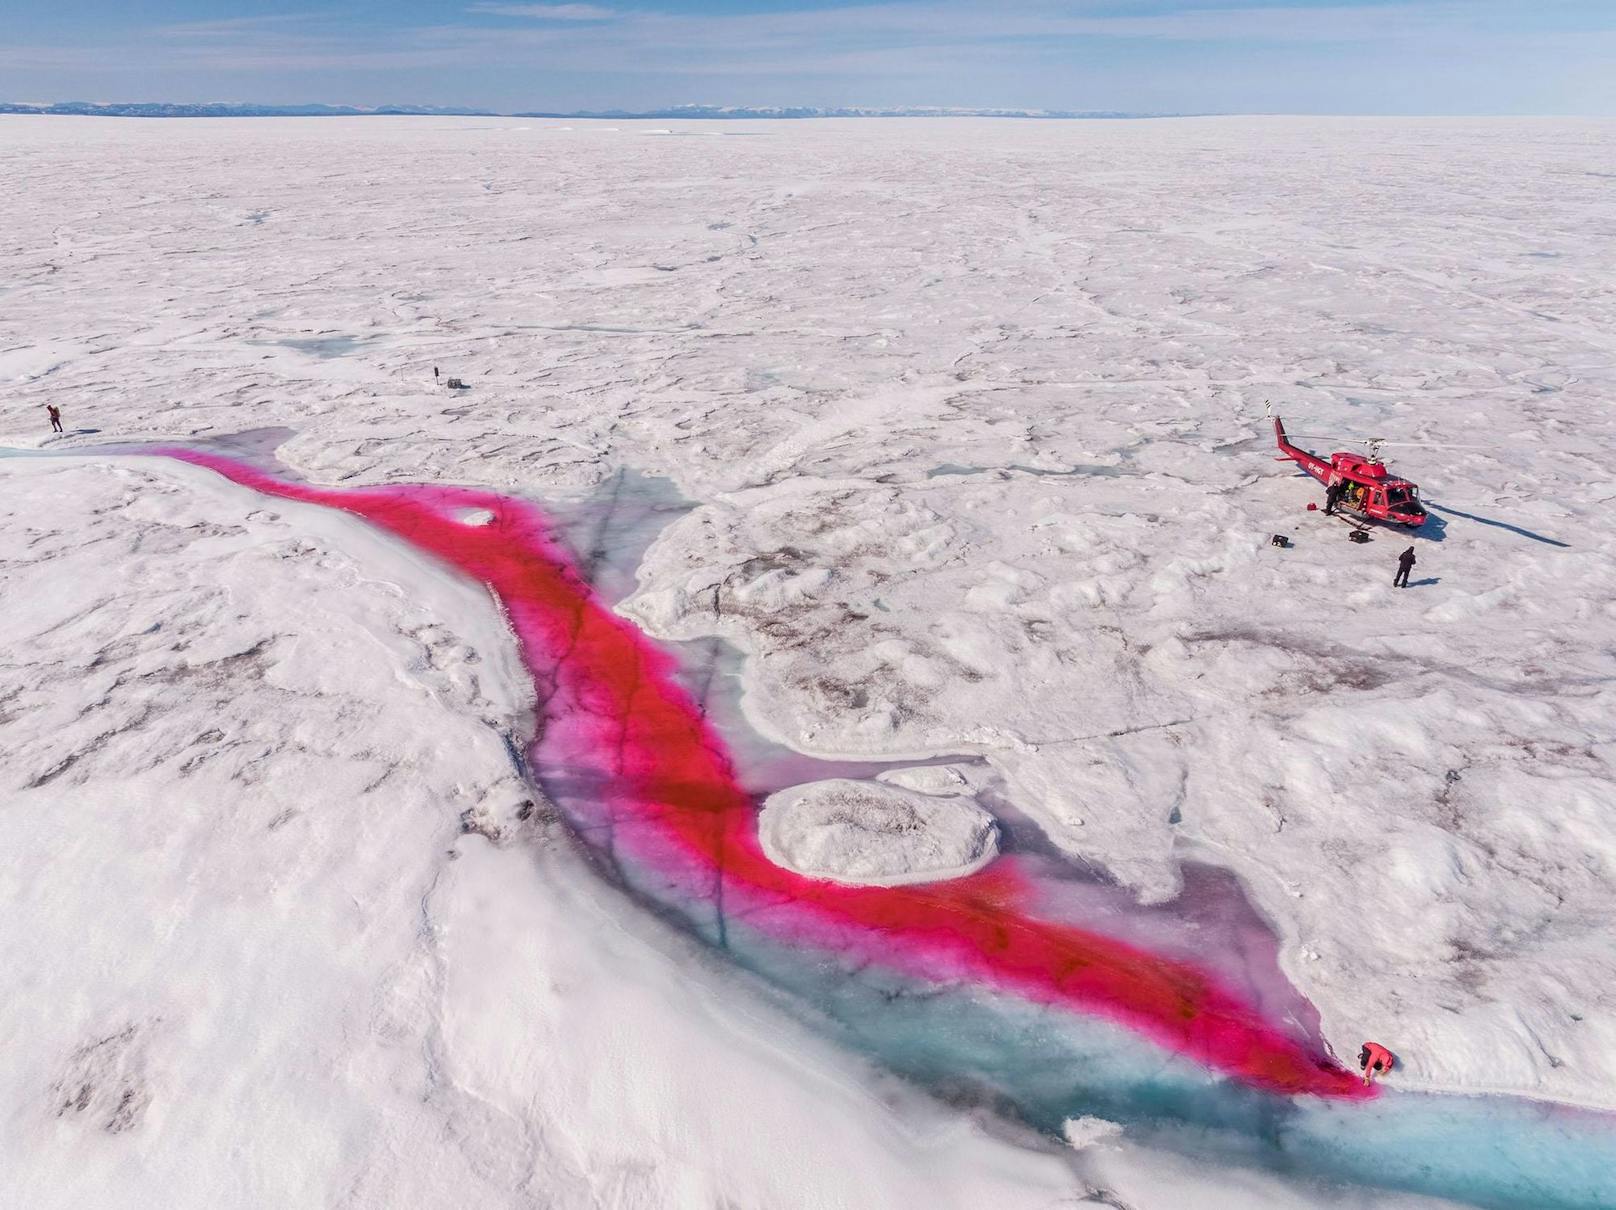 Neben der Antarktis ist <strong>Grönland</strong> der größte Eisspeicher der Welt. Dessen Eispanzer wird jedoch kleiner. Als Ursache vermuten Glaziologen unter anderem die steigenden Temperaturen, die das Eisschild schmelzen lassen. Mithilfe von Farbe überprüften sie 2017 ihre Theorie und fanden heraus, dass das Oberflächenwasser als Schmiermittel zwischen Eis und Fels dient und so das Abrutschen ins Meer beschleunigt.